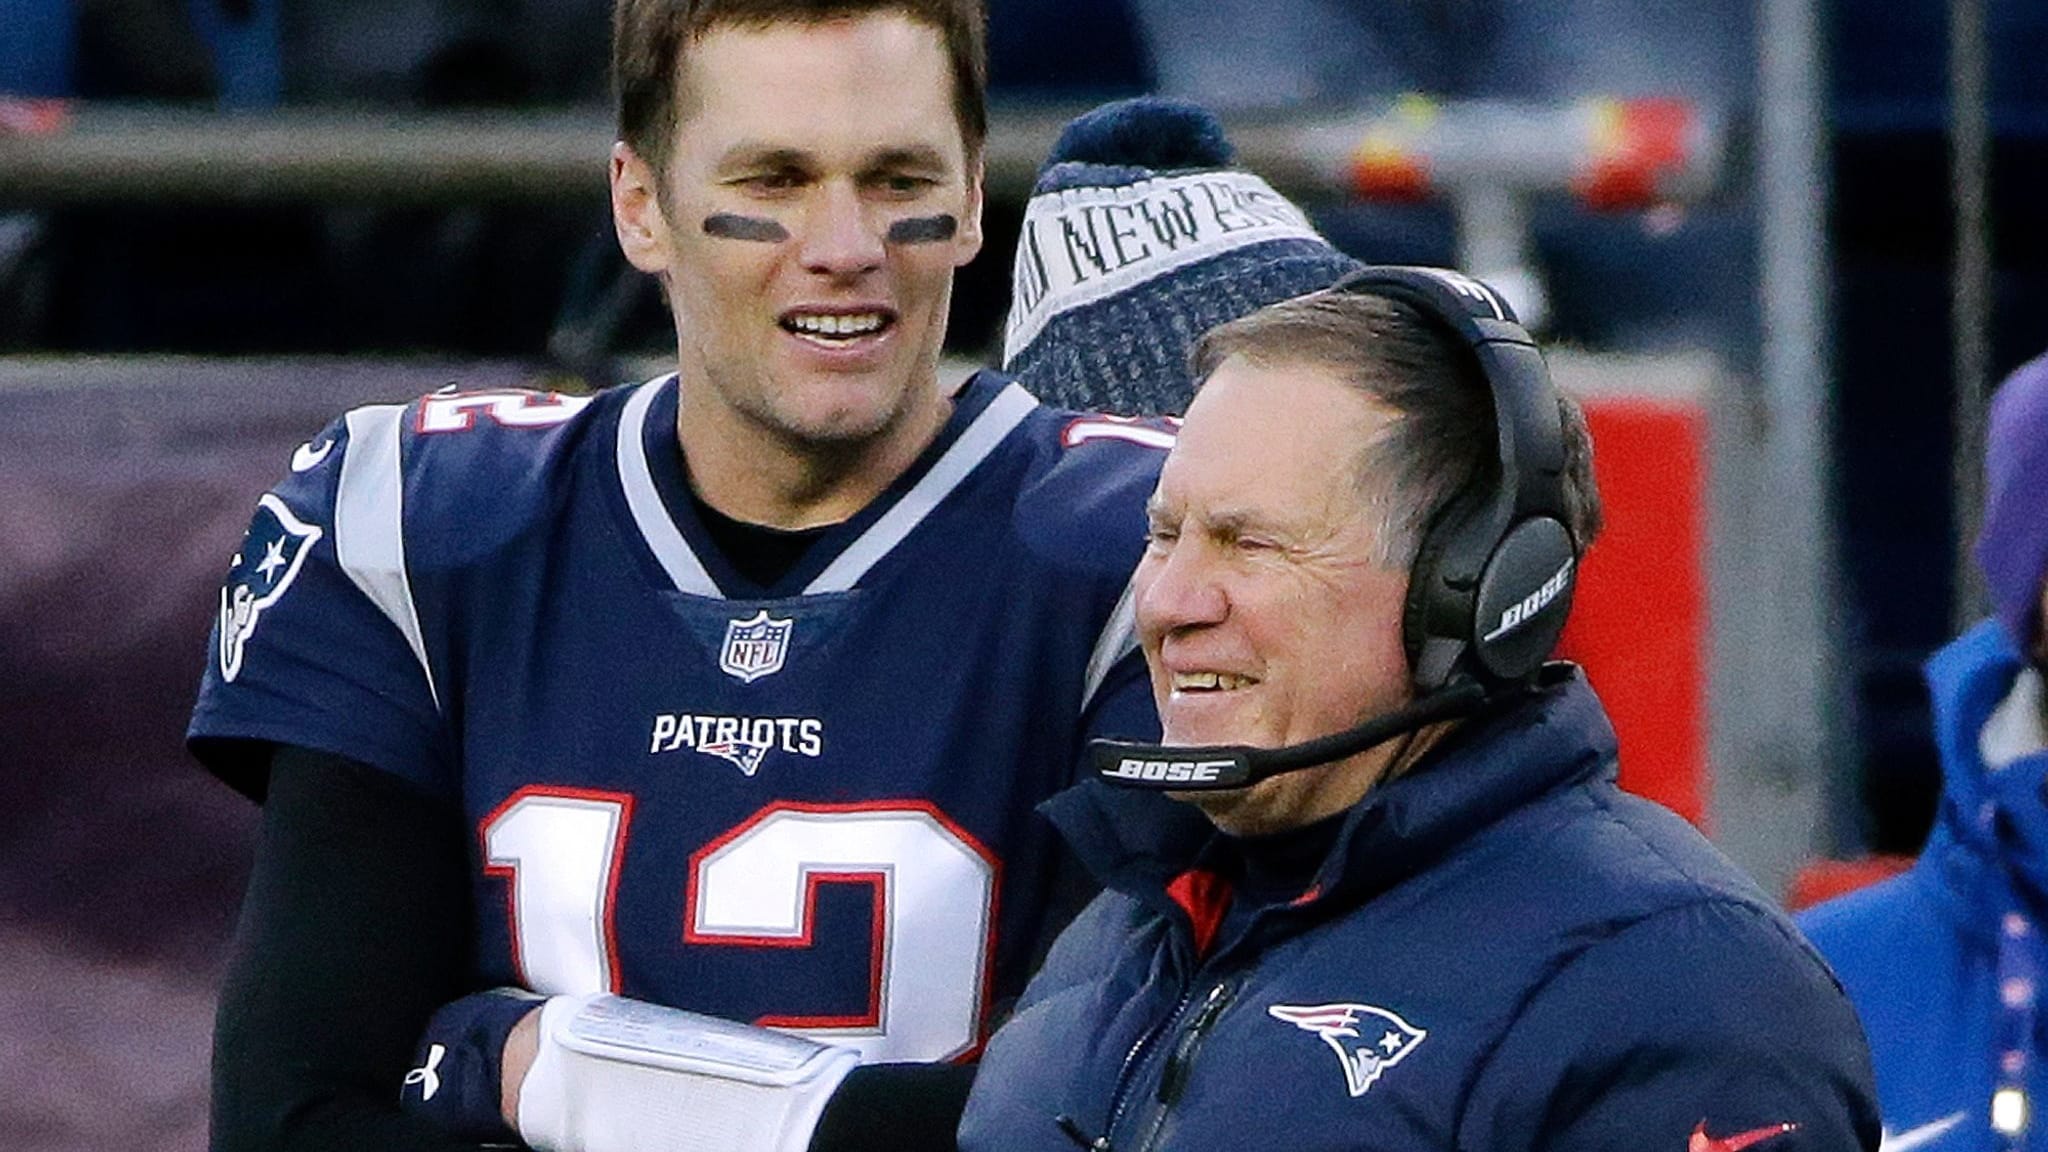 Brady fehlt Verständnis: Ex-Coach Belichick ohne Job in NFL